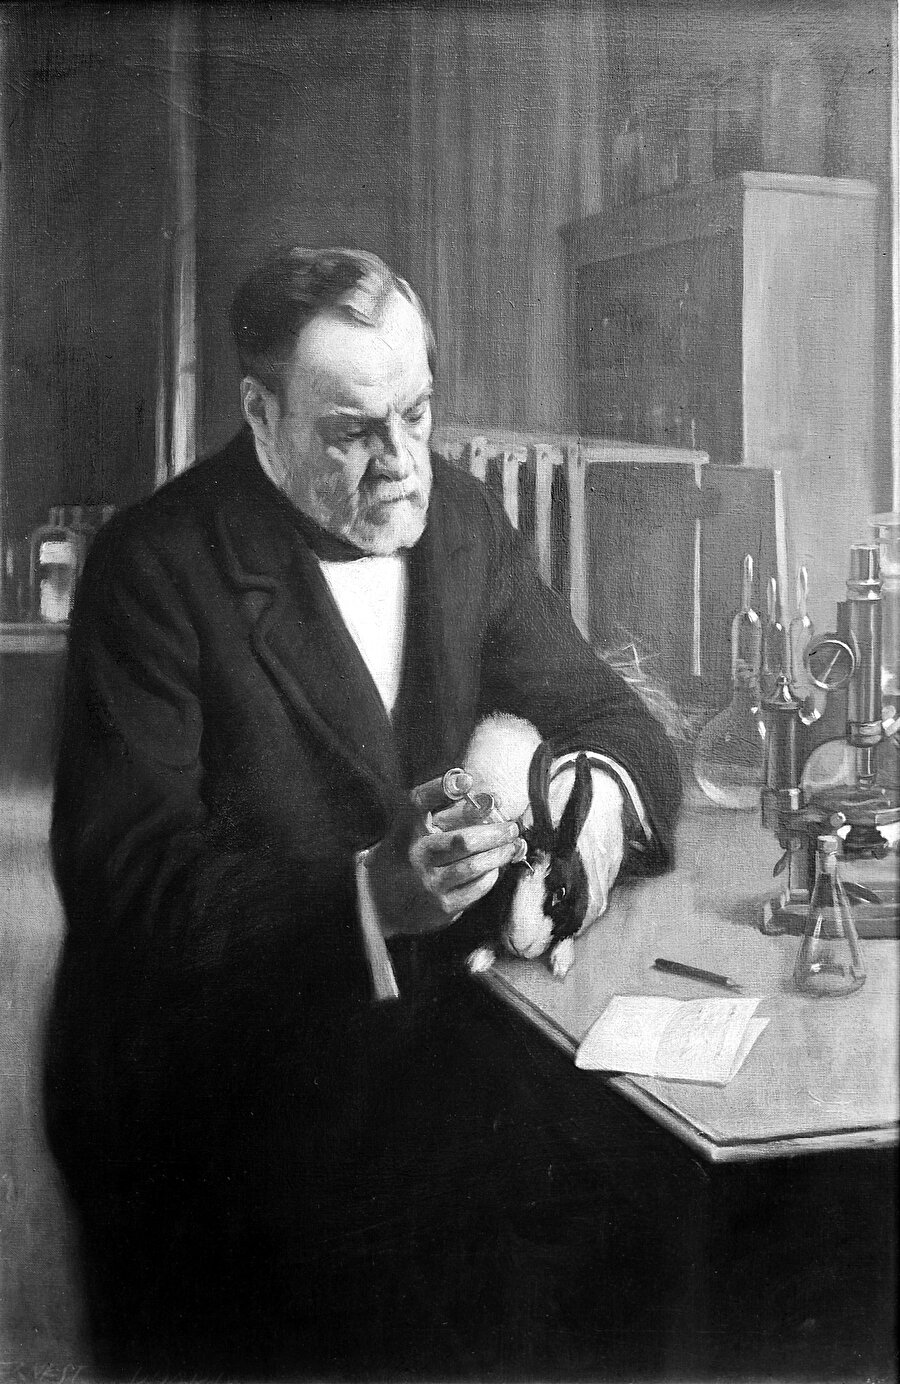 Louis Pasteur

                                    
                                    
                                    
                                    
                                    Hala hiç bir şey için geç olmadığına, hayatın her anının çok önemli ve sürprizlerle dolu olduğuna ikna olmadıysanız o zaman Pasteur'ü hatırlayalım. Hani şu kuduz aşısını bulan doktor. Kuduz aşısını bulduğunda 60 yaşını geçmişti.
                                
                                
                                
                                
                                